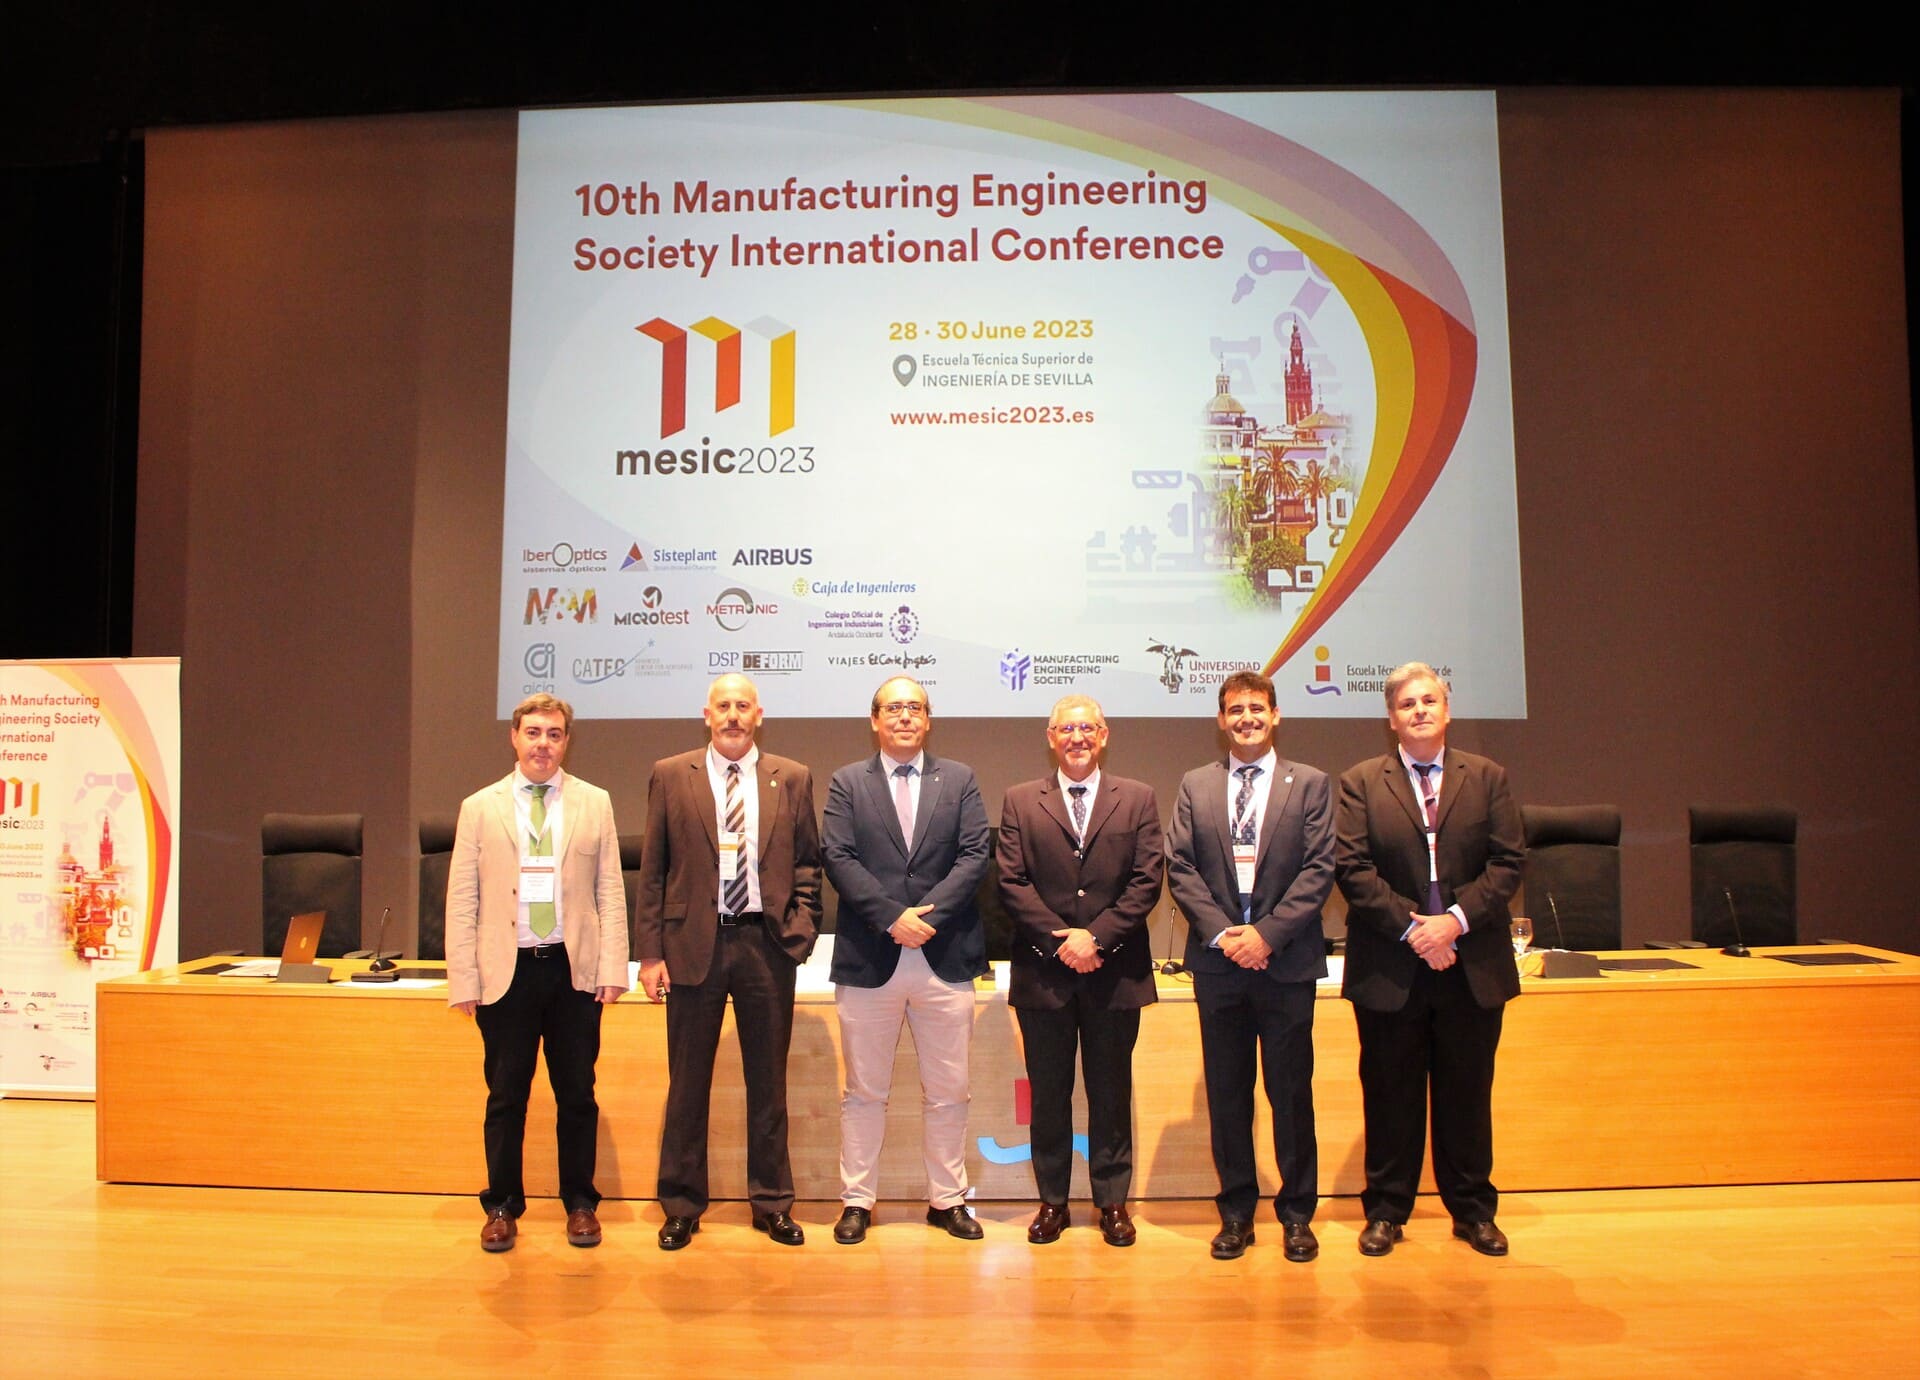 MESIC 2023, 10ª Conferencia Internacional de la Sociedad de Ingeniería de Fabricación